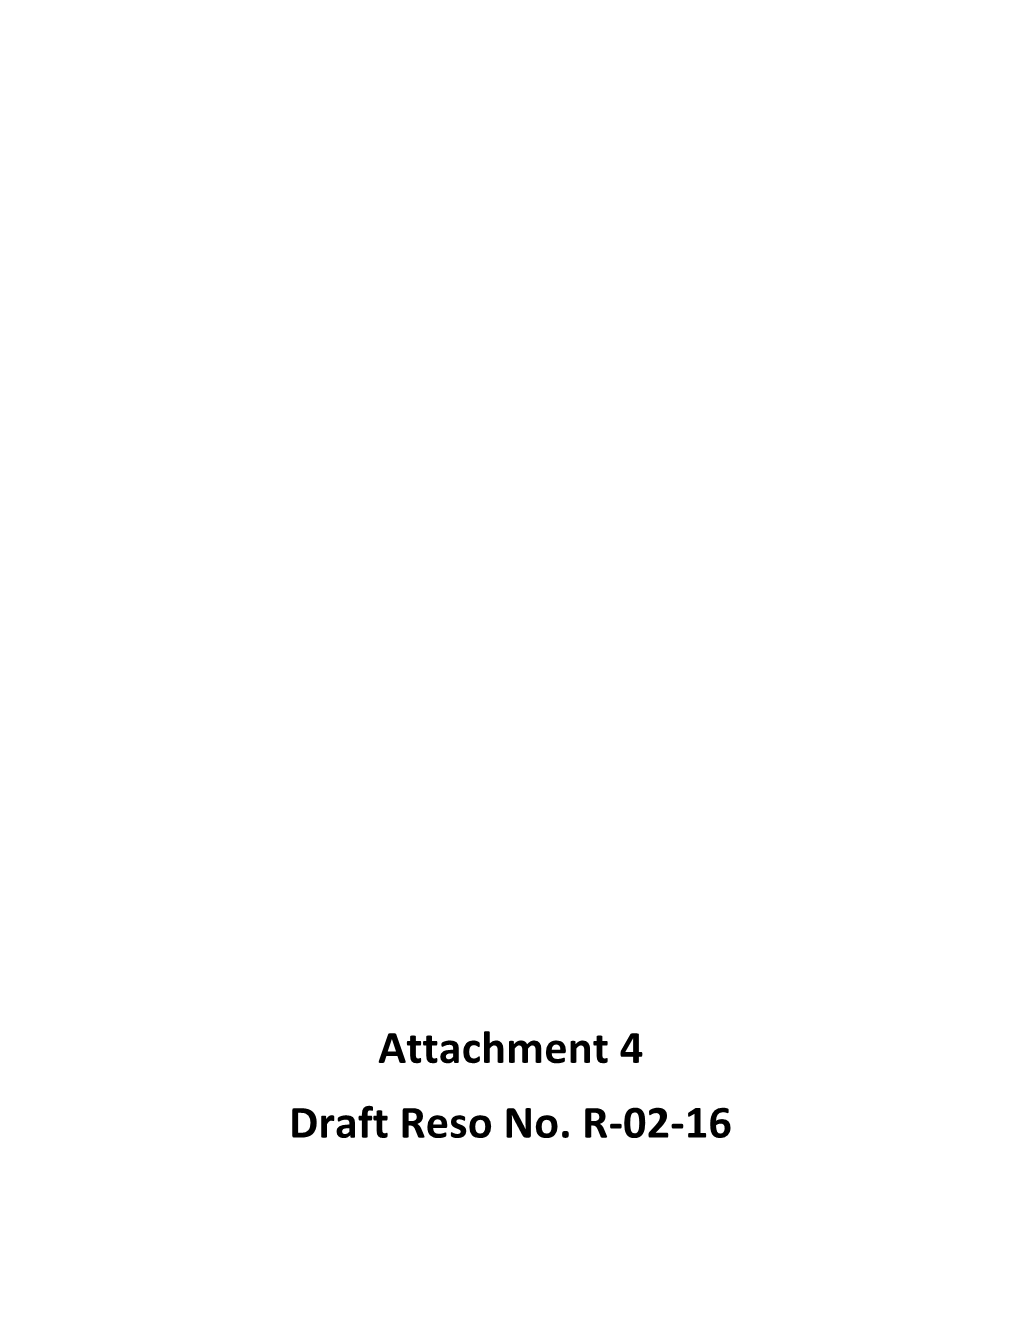 Attachment 4 Draft Reso No. R-02-16 Project Site